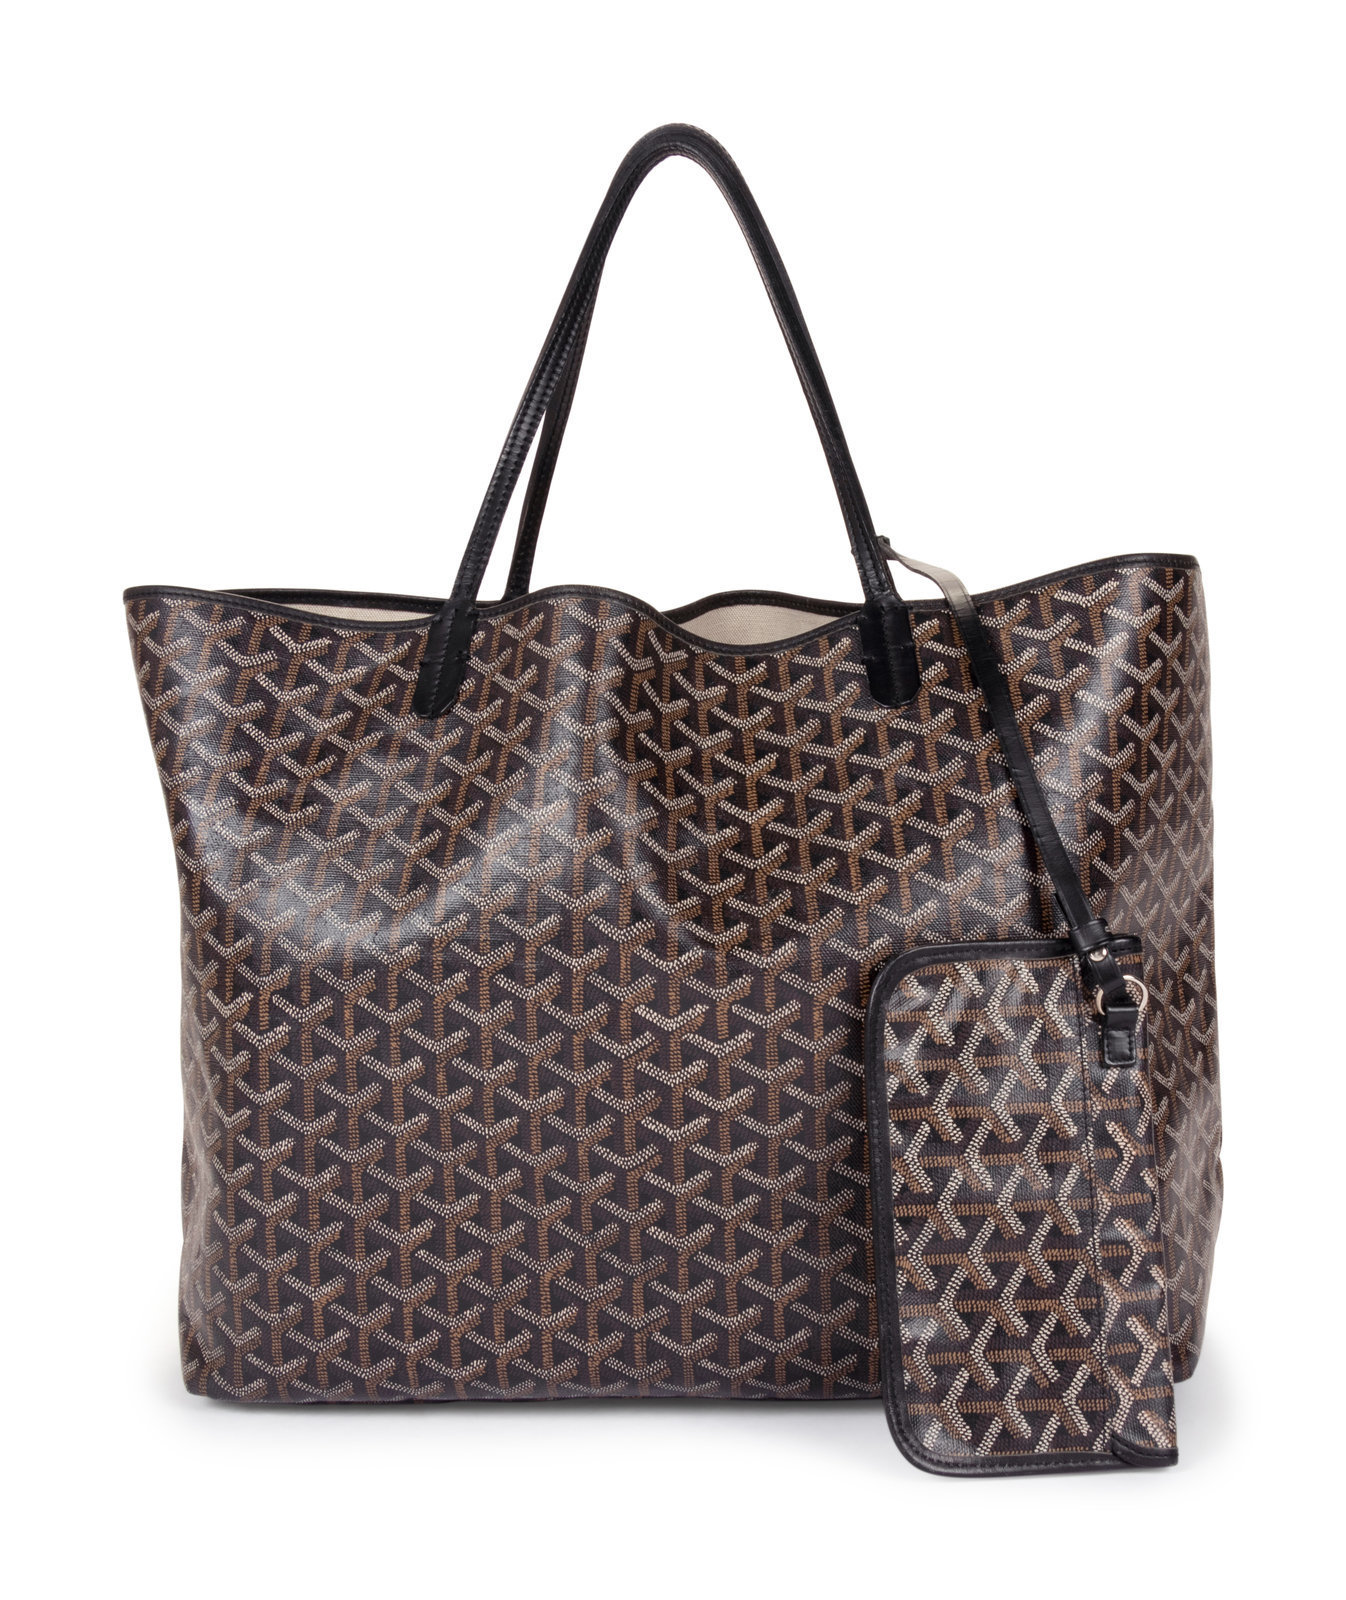 Sold at Auction: E. Goyard Paris, Sac Saint Louis tote bag and pouc…